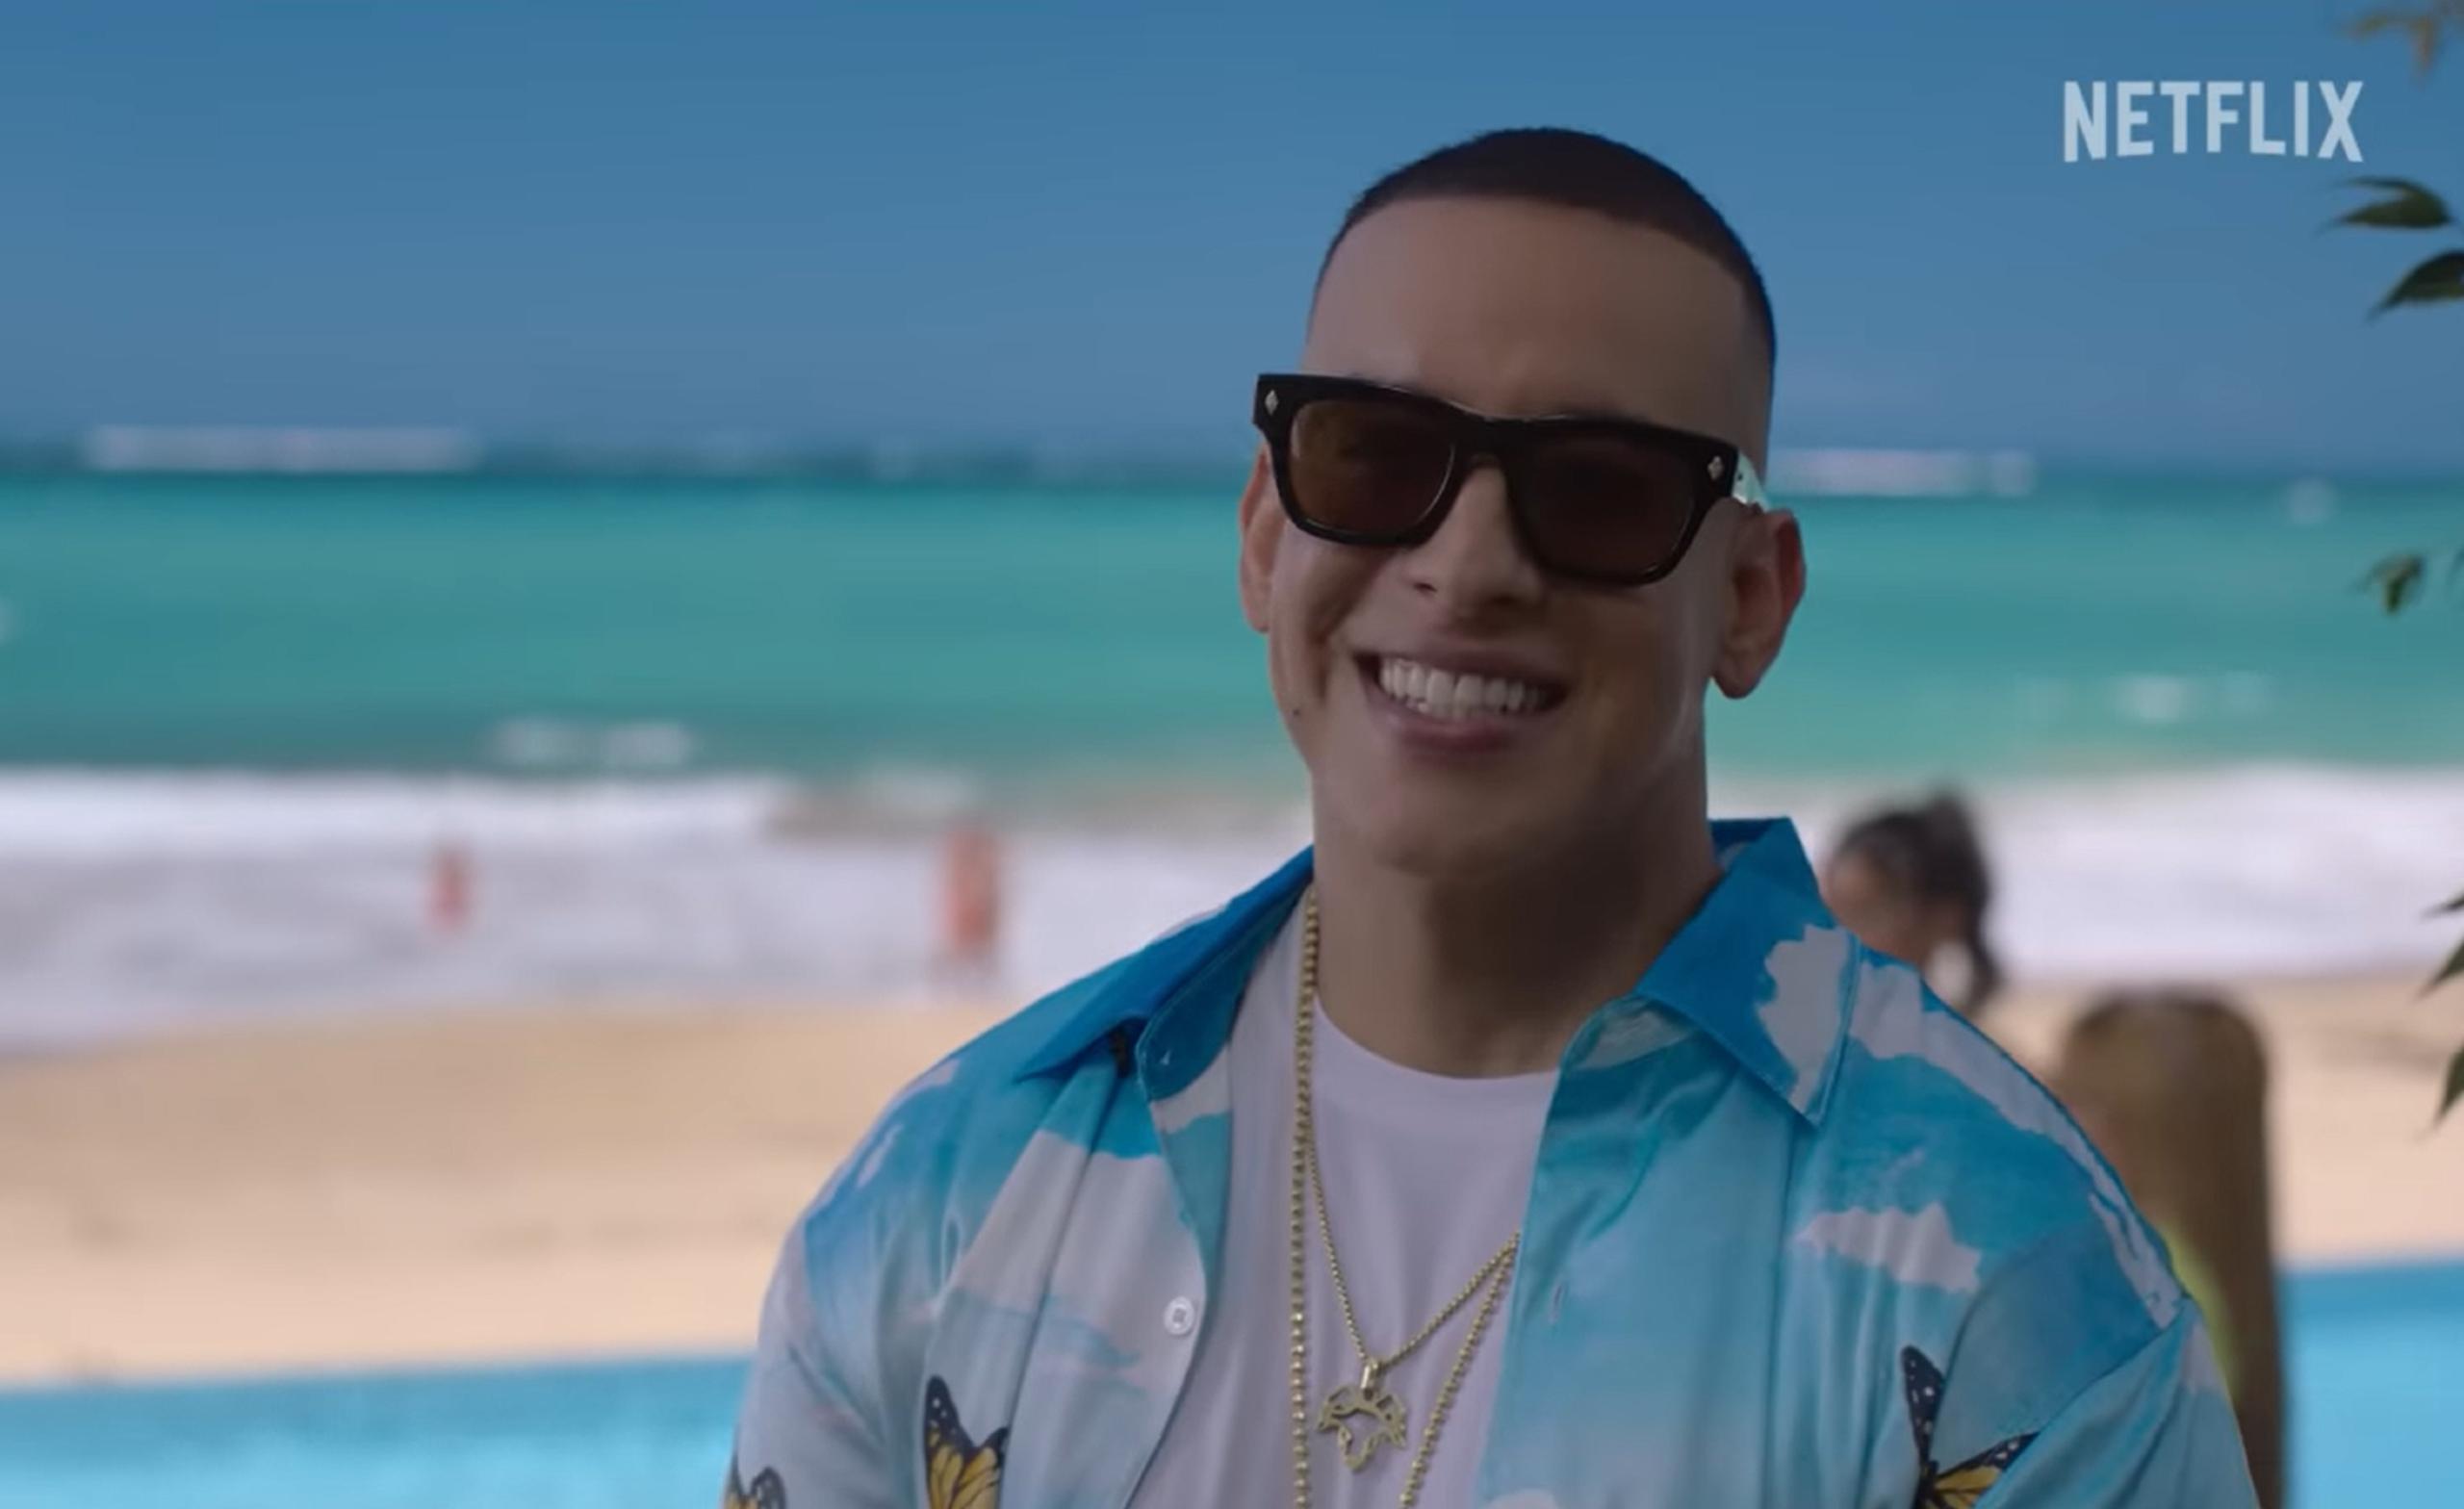 El cantante de música urbana, Daddy Yankee, tendrá una participación especial en la serie de Netflix, grabada en Puerto Rico, "Neon".